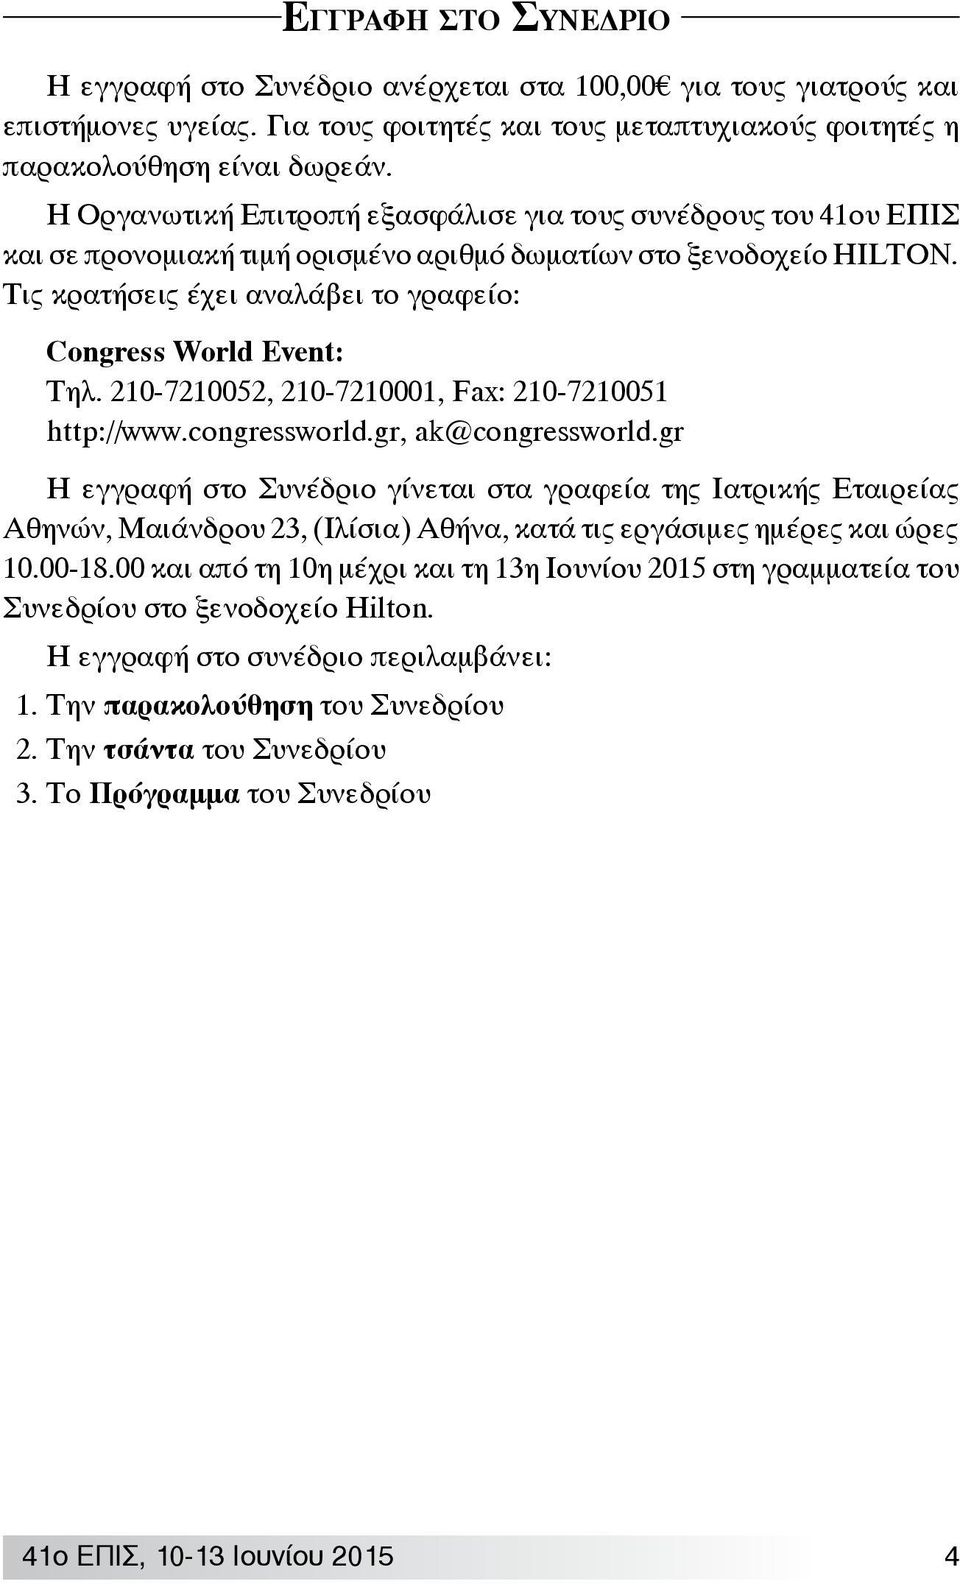 Τις κρατήσεις έχει αναλάβει το γραφείο: Congress World Event: Τηλ. 210-7210052, 210-7210001, Fax: 210-7210051 http://www.congressworld.gr, ak@congressworld.